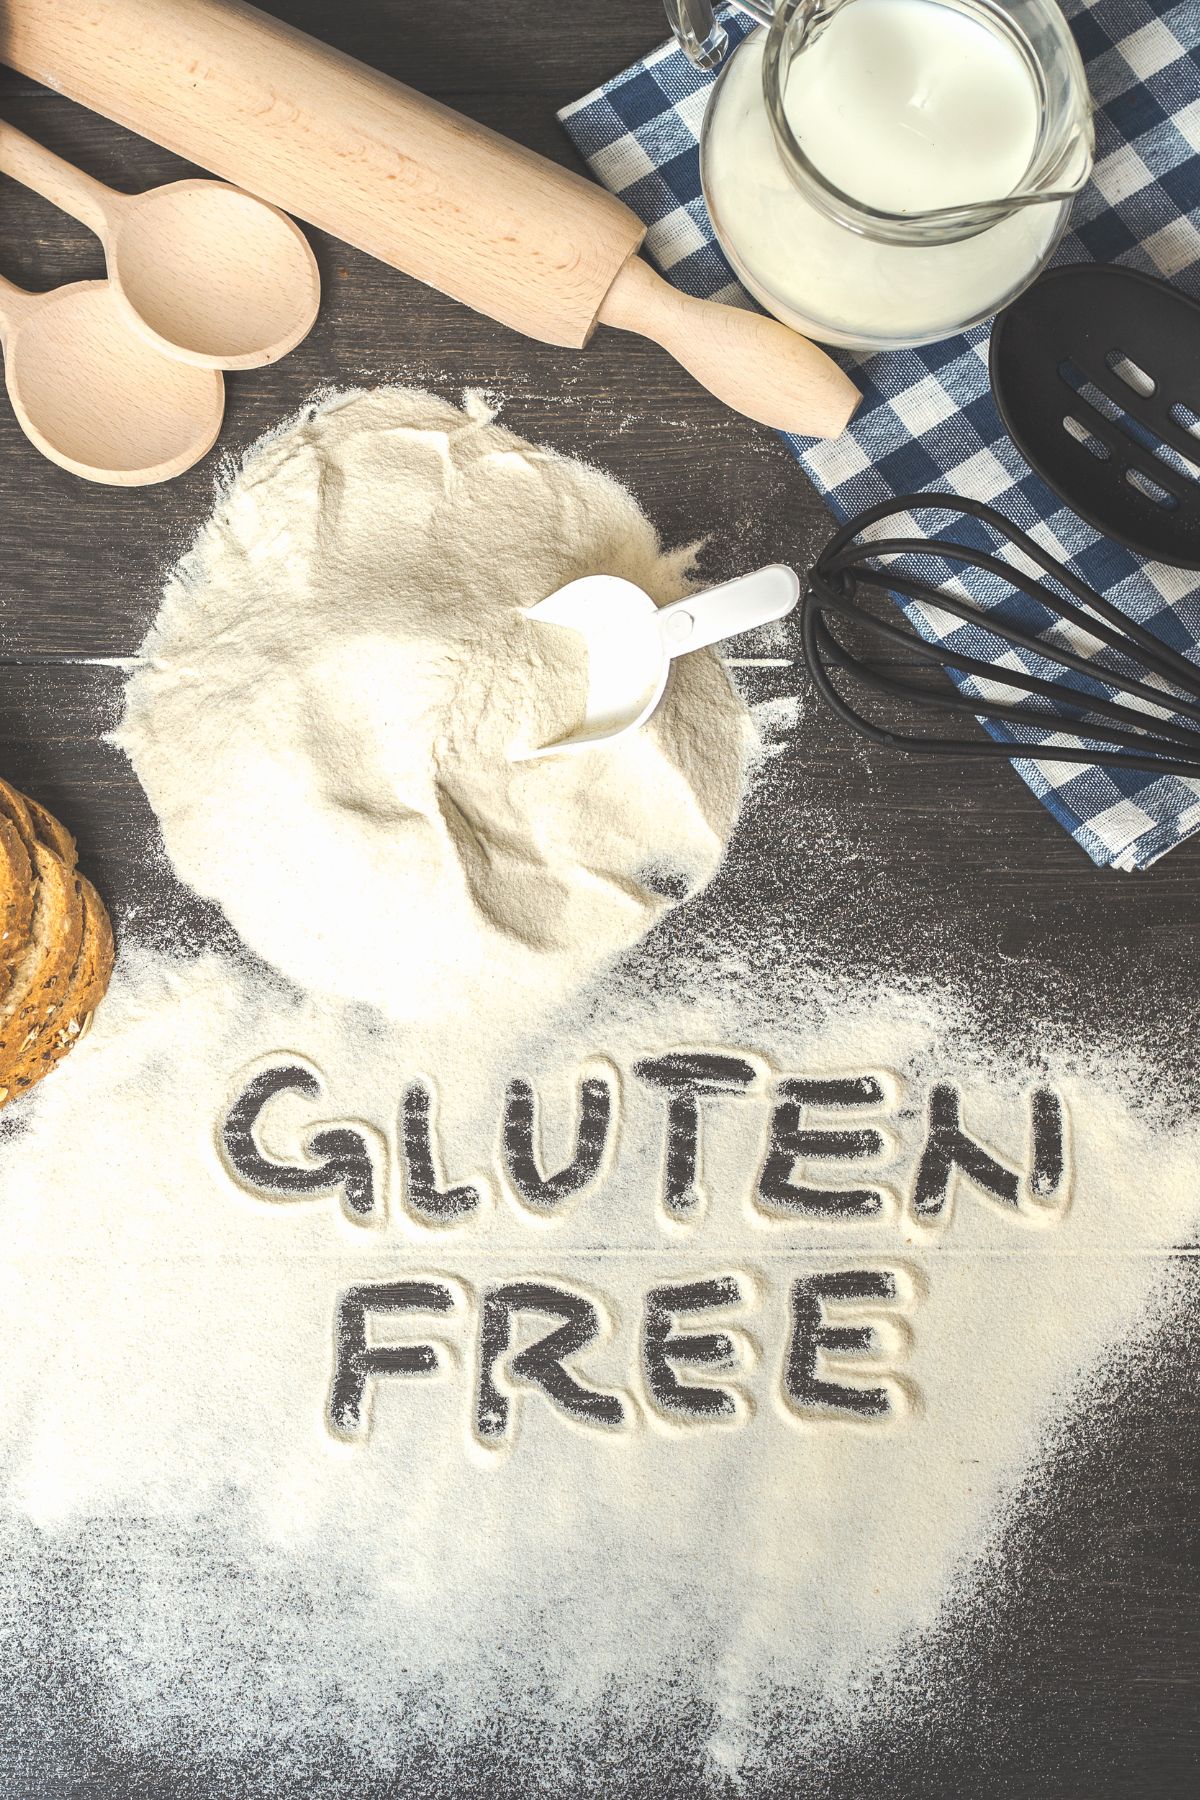 Gluten free spelled in gluten free flour on wooden surface.